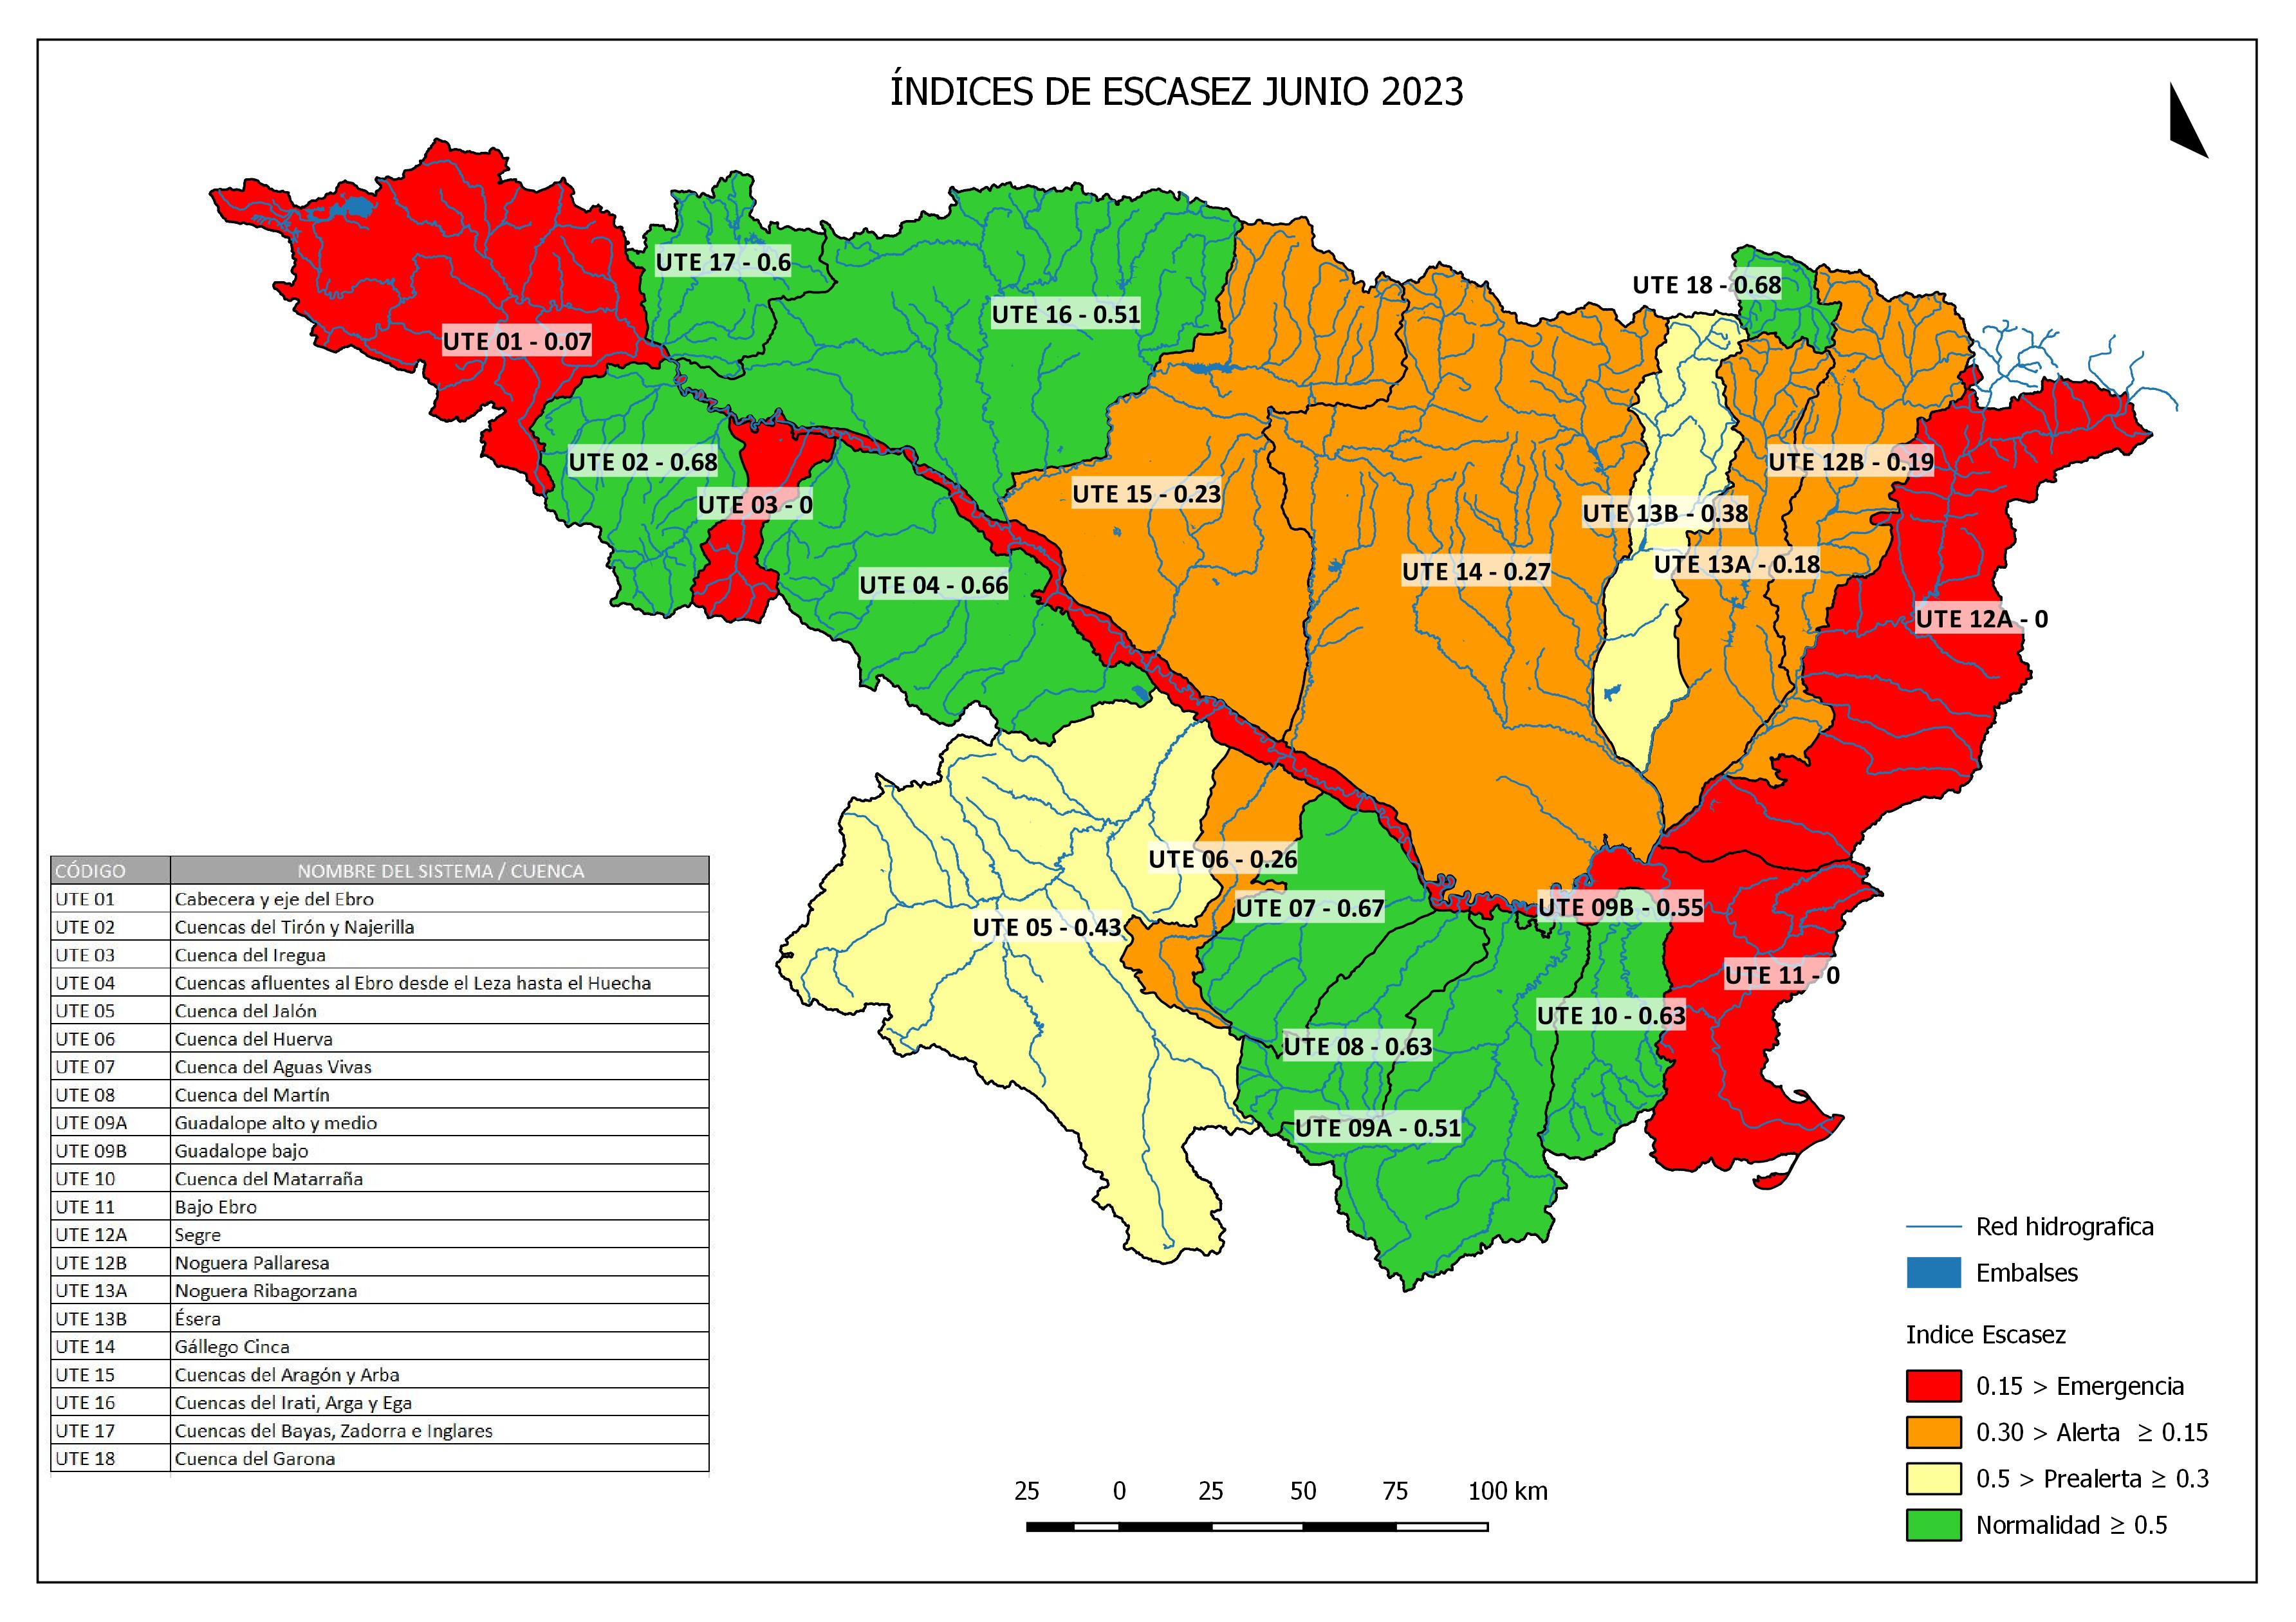 Informe mensual de indicadores de sequía y escasez Junio 23